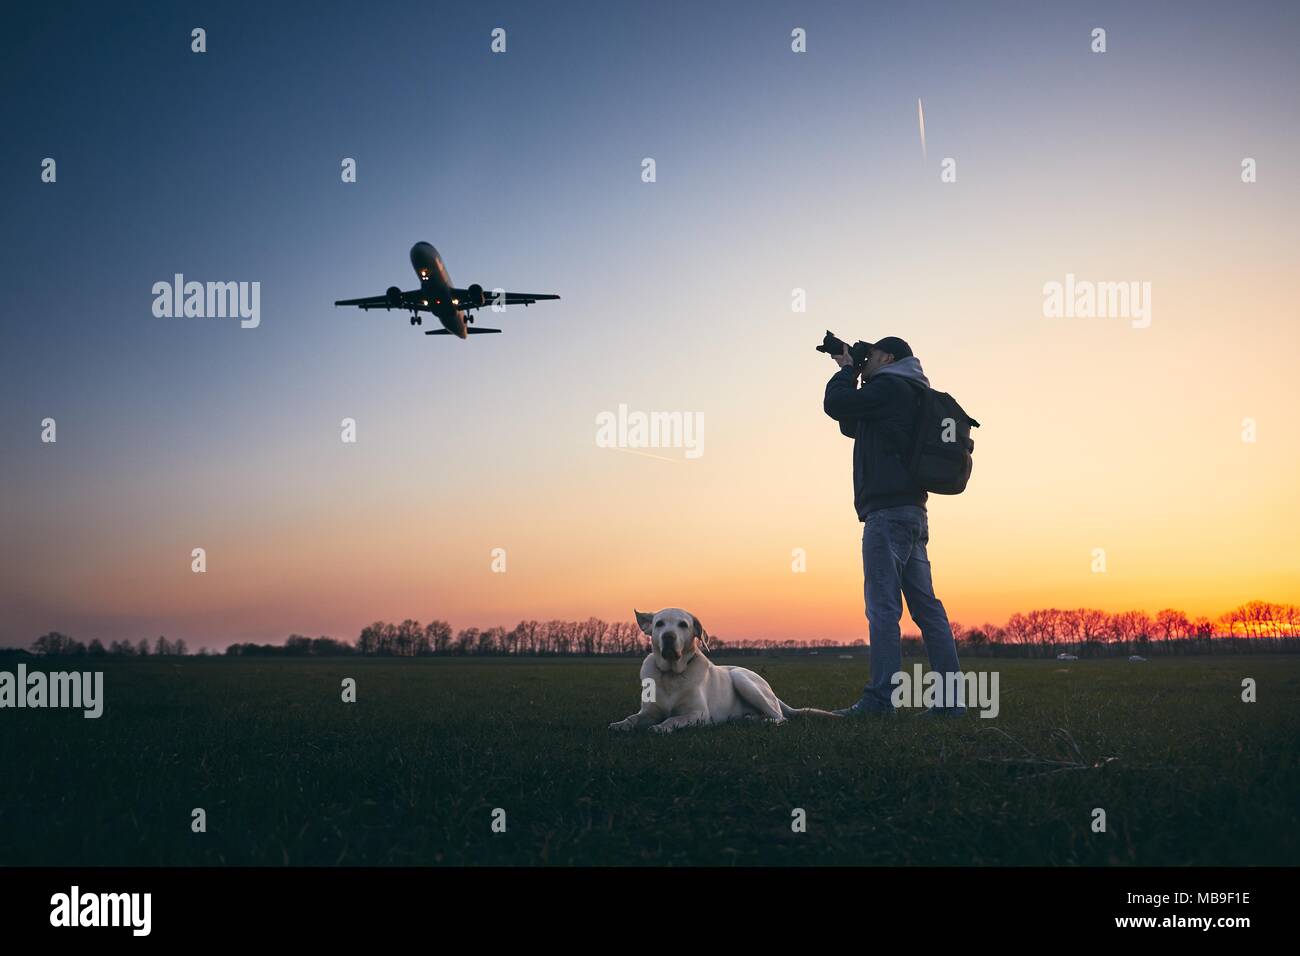 Junger Mann mit Hund ist Fotografieren in der Nähe der Flughafen. Flugzeug Landung aginst Moody sky sky Golden Sunset. Stockfoto